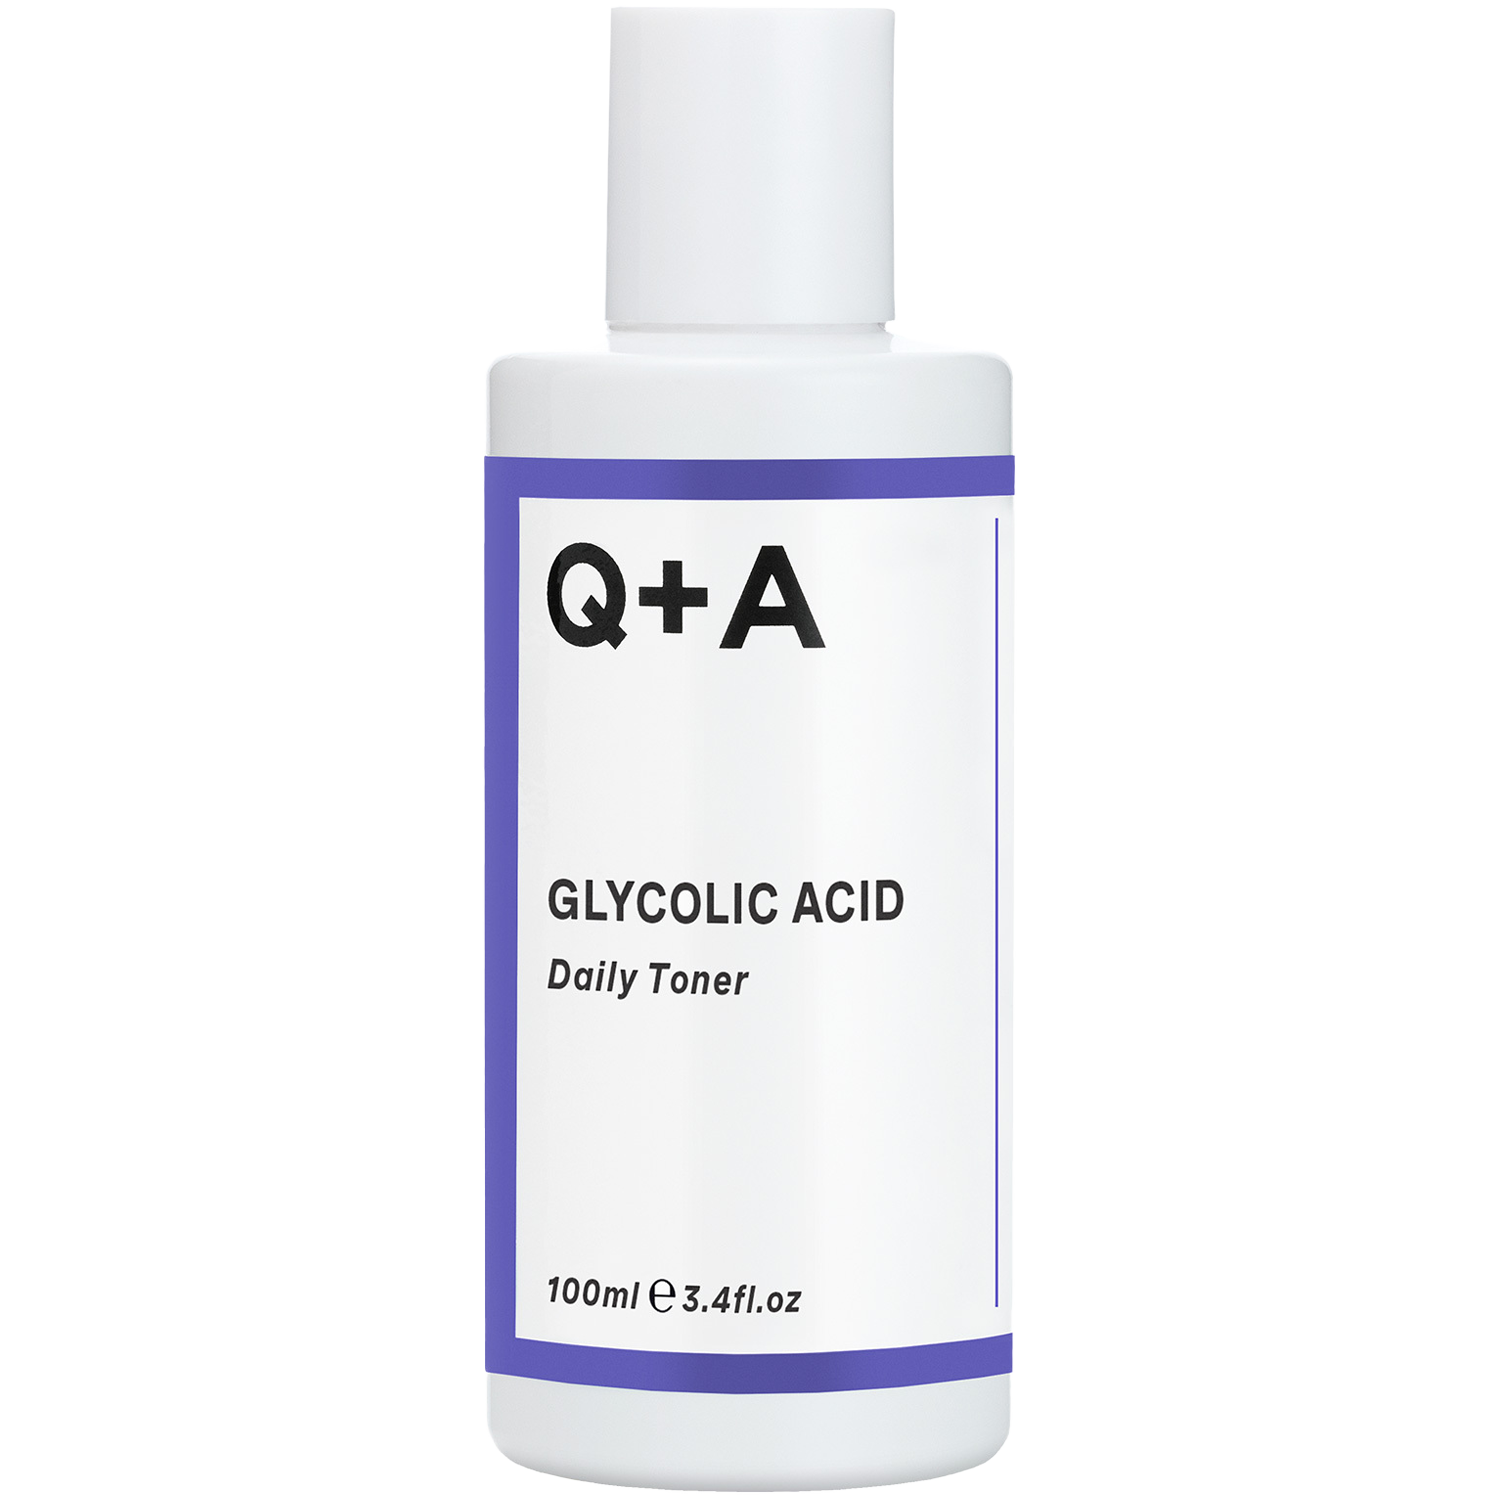 Q+A Glycolic Acid тоник для лица, 100 мл тоник для лица q a glycolic acid 100 мл